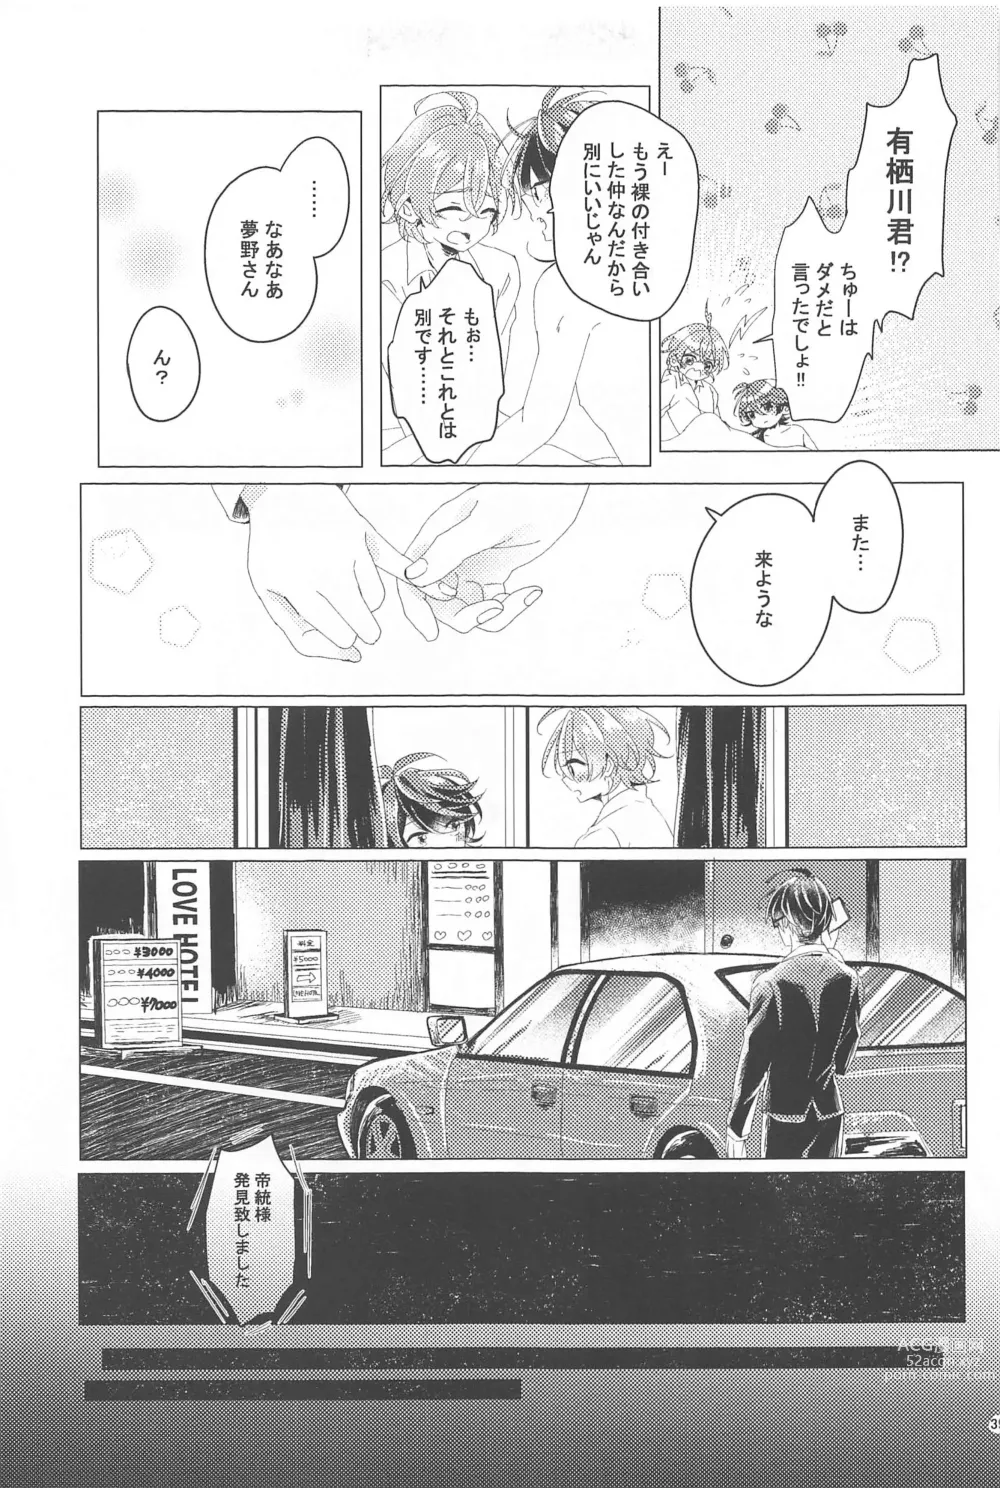 Page 38 of doujinshi Hajimete no  Otomodachi